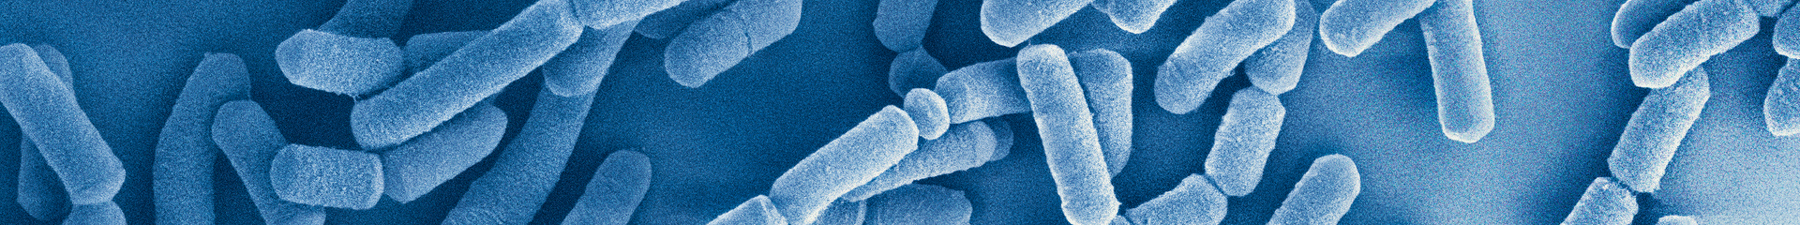 Microbial_image_LGG_Close_up1800x225